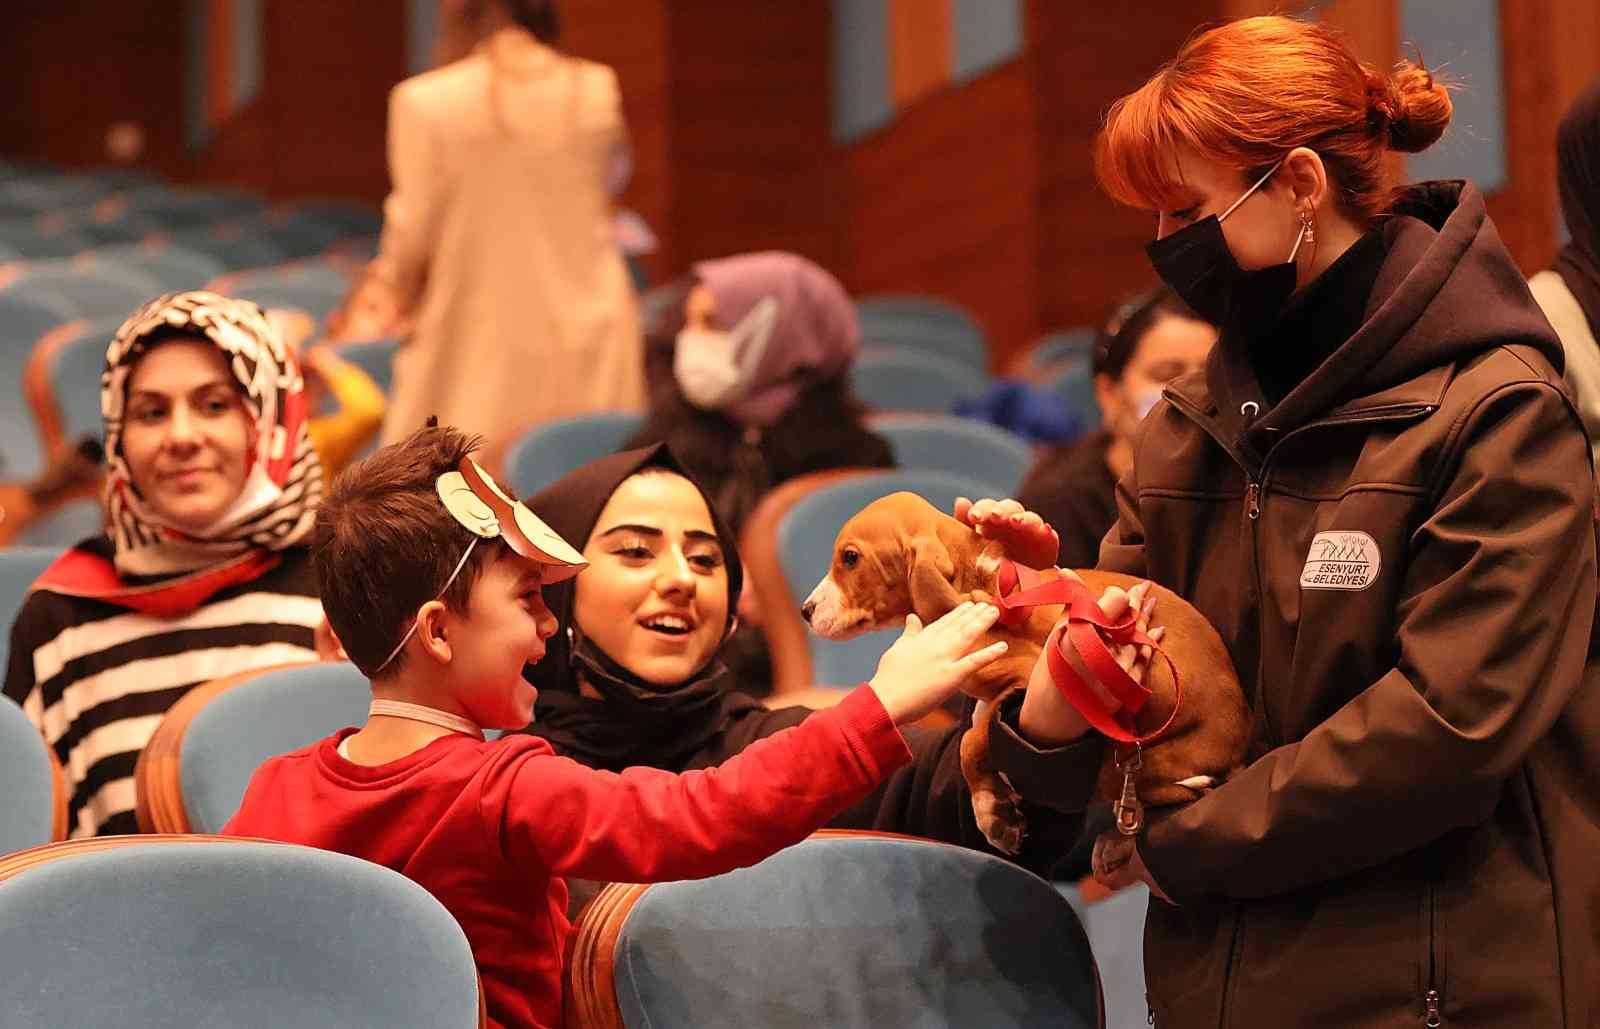 Esenyurt’ta çocuklara hayvanları sevdiren gösteri #istanbul